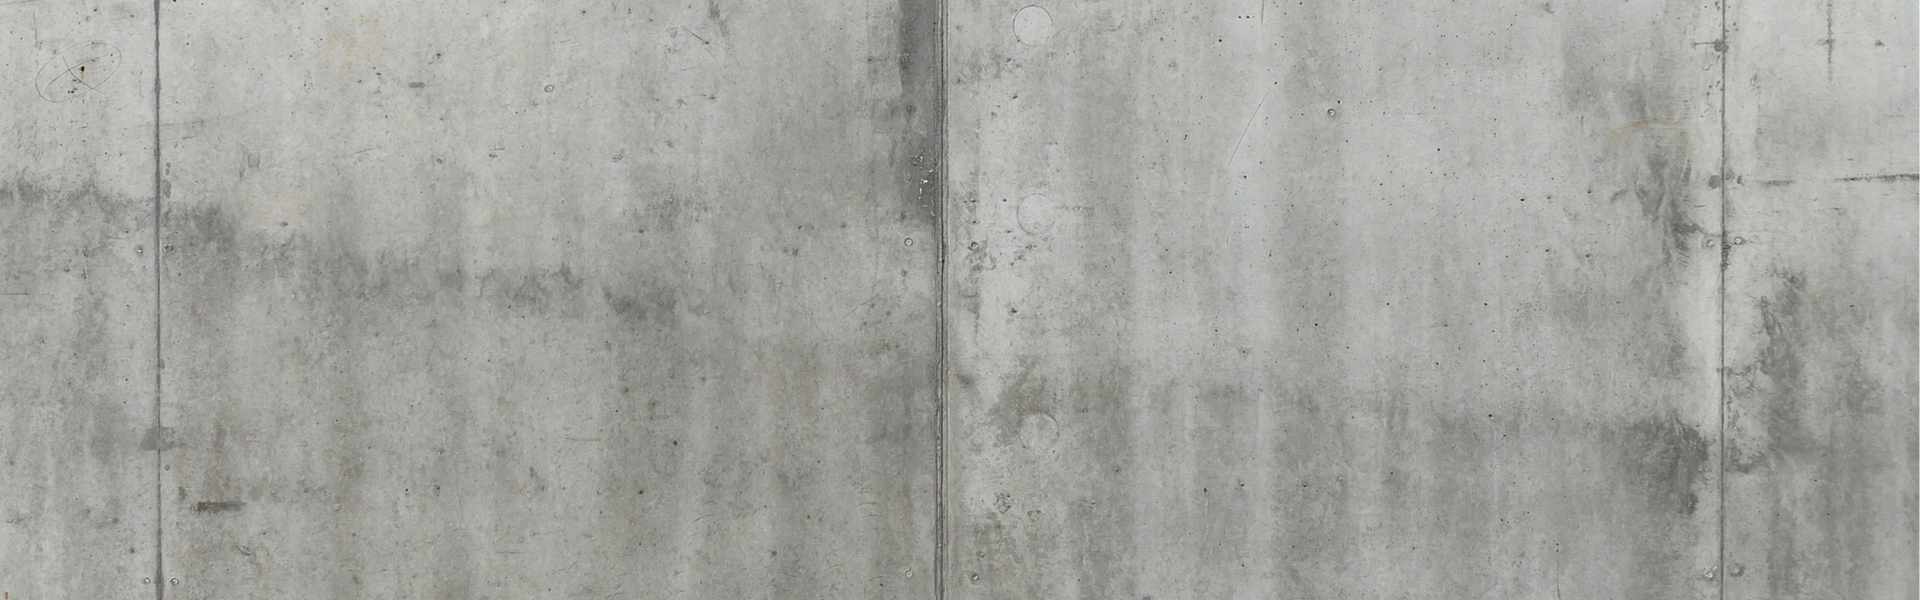 ściana betonowa